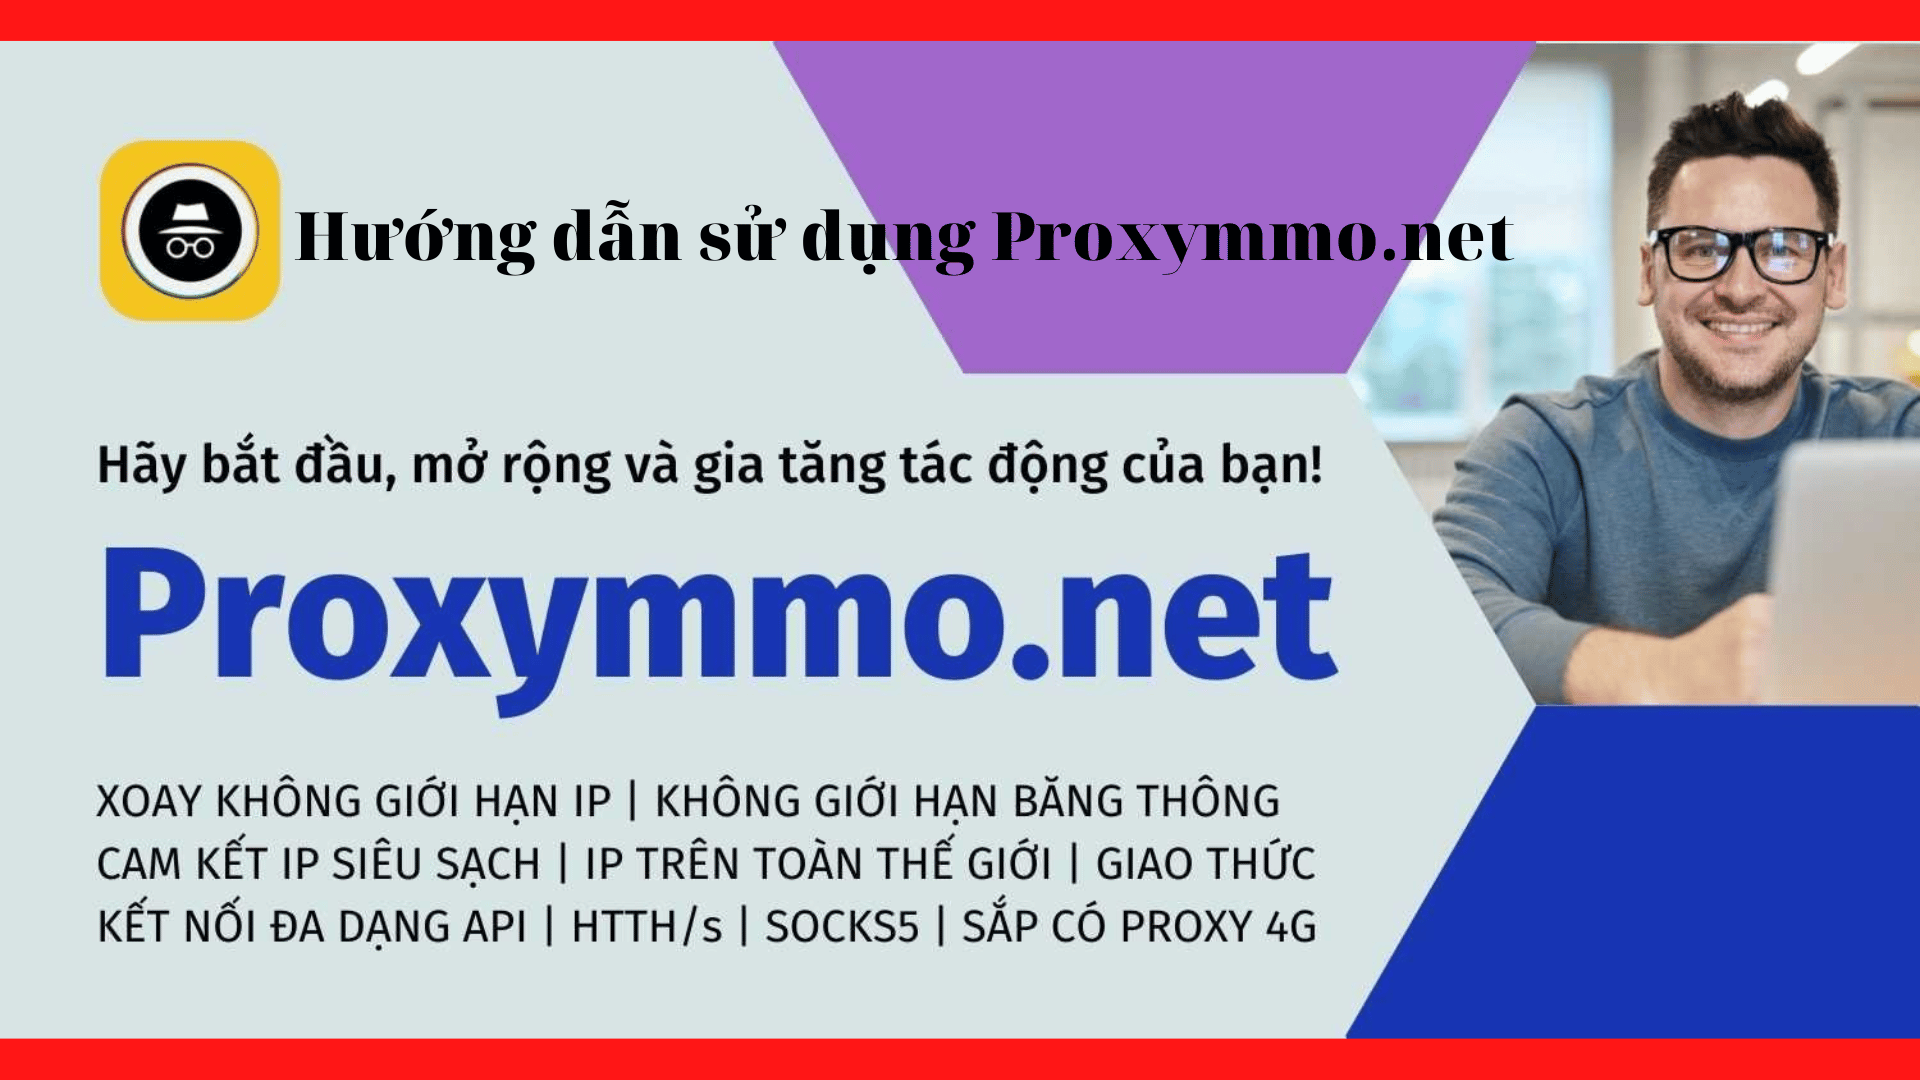 Video hướng dẫn sử dụng Proxymmo net P1